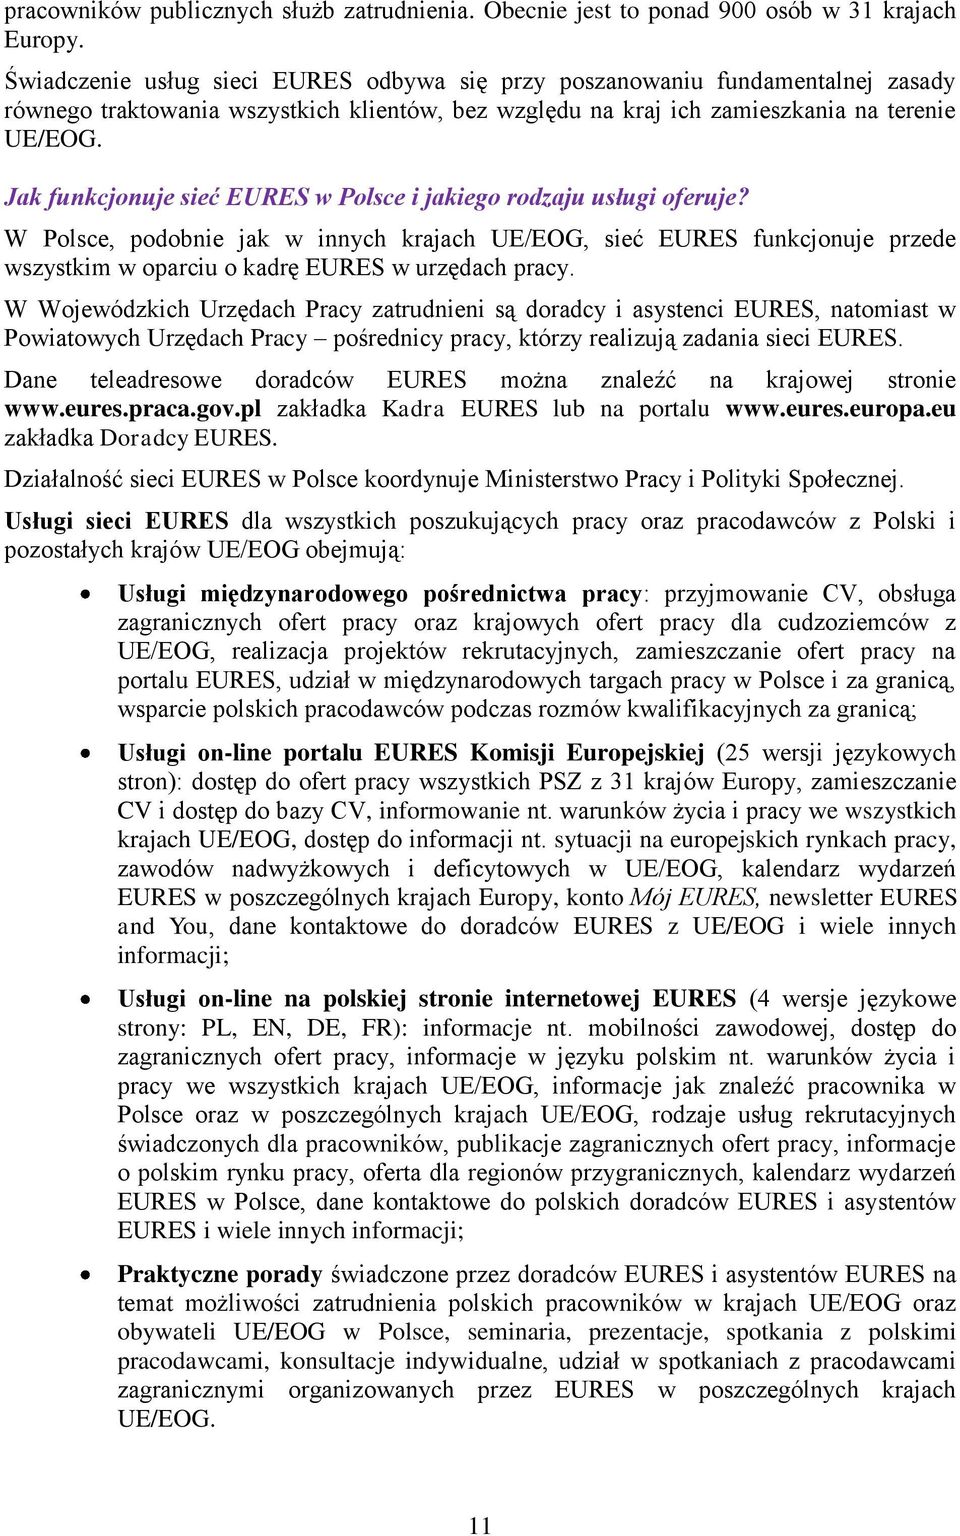 Jak funkcjonuje sieć EURES w Polsce i jakiego rodzaju usługi oferuje? W Polsce, podobnie jak w innych krajach UE/EOG, sieć EURES funkcjonuje przede wszystkim w oparciu o kadrę EURES w urzędach pracy.